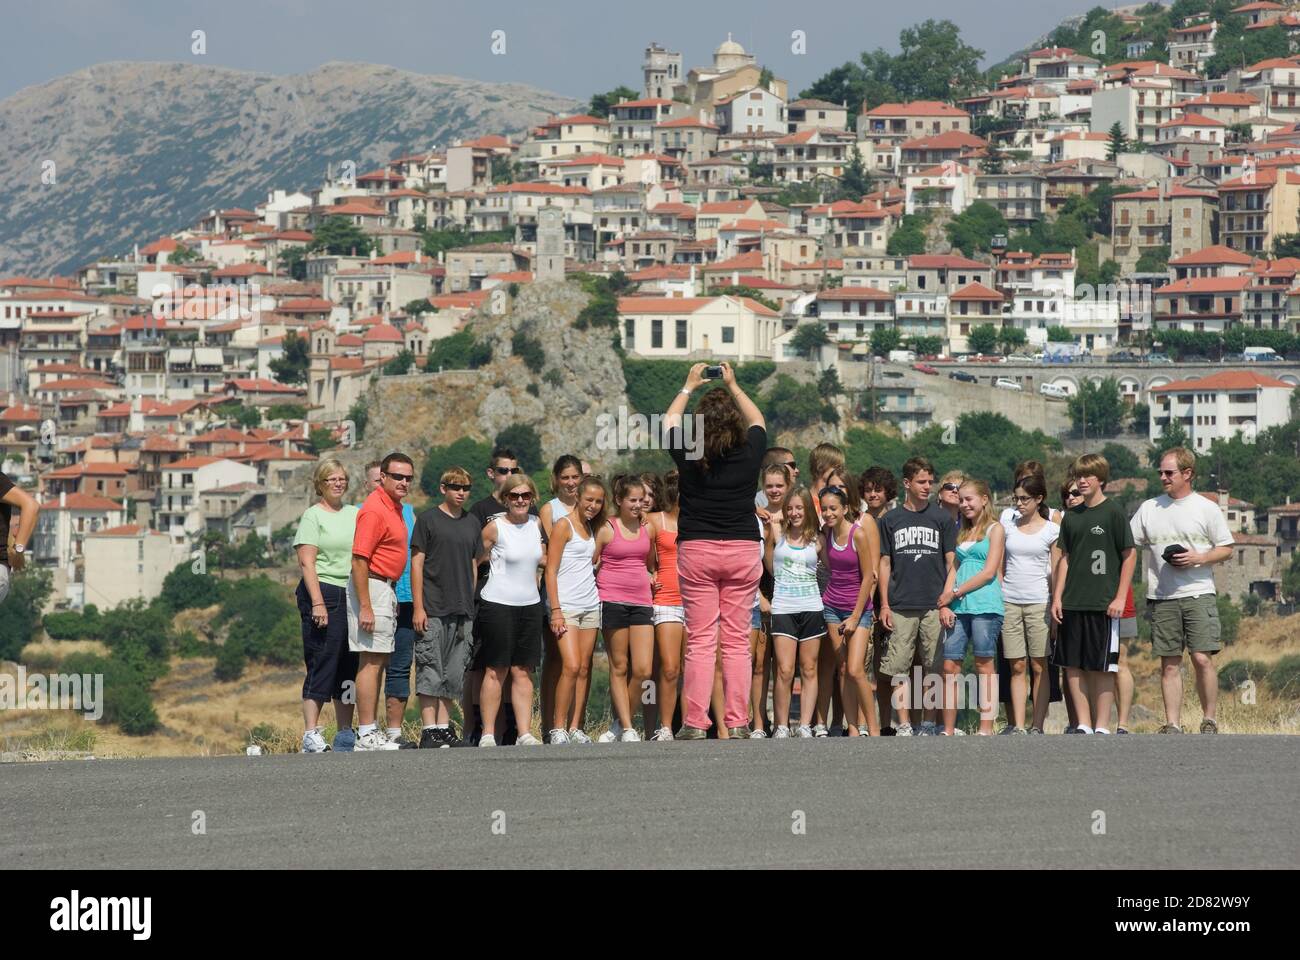 Arachova, Grèce - 27 juillet 2009 : un groupe scolaire touristique pose pour une photo ; en arrière-plan, le village d'Arachova en Grèce (le village est flou Banque D'Images